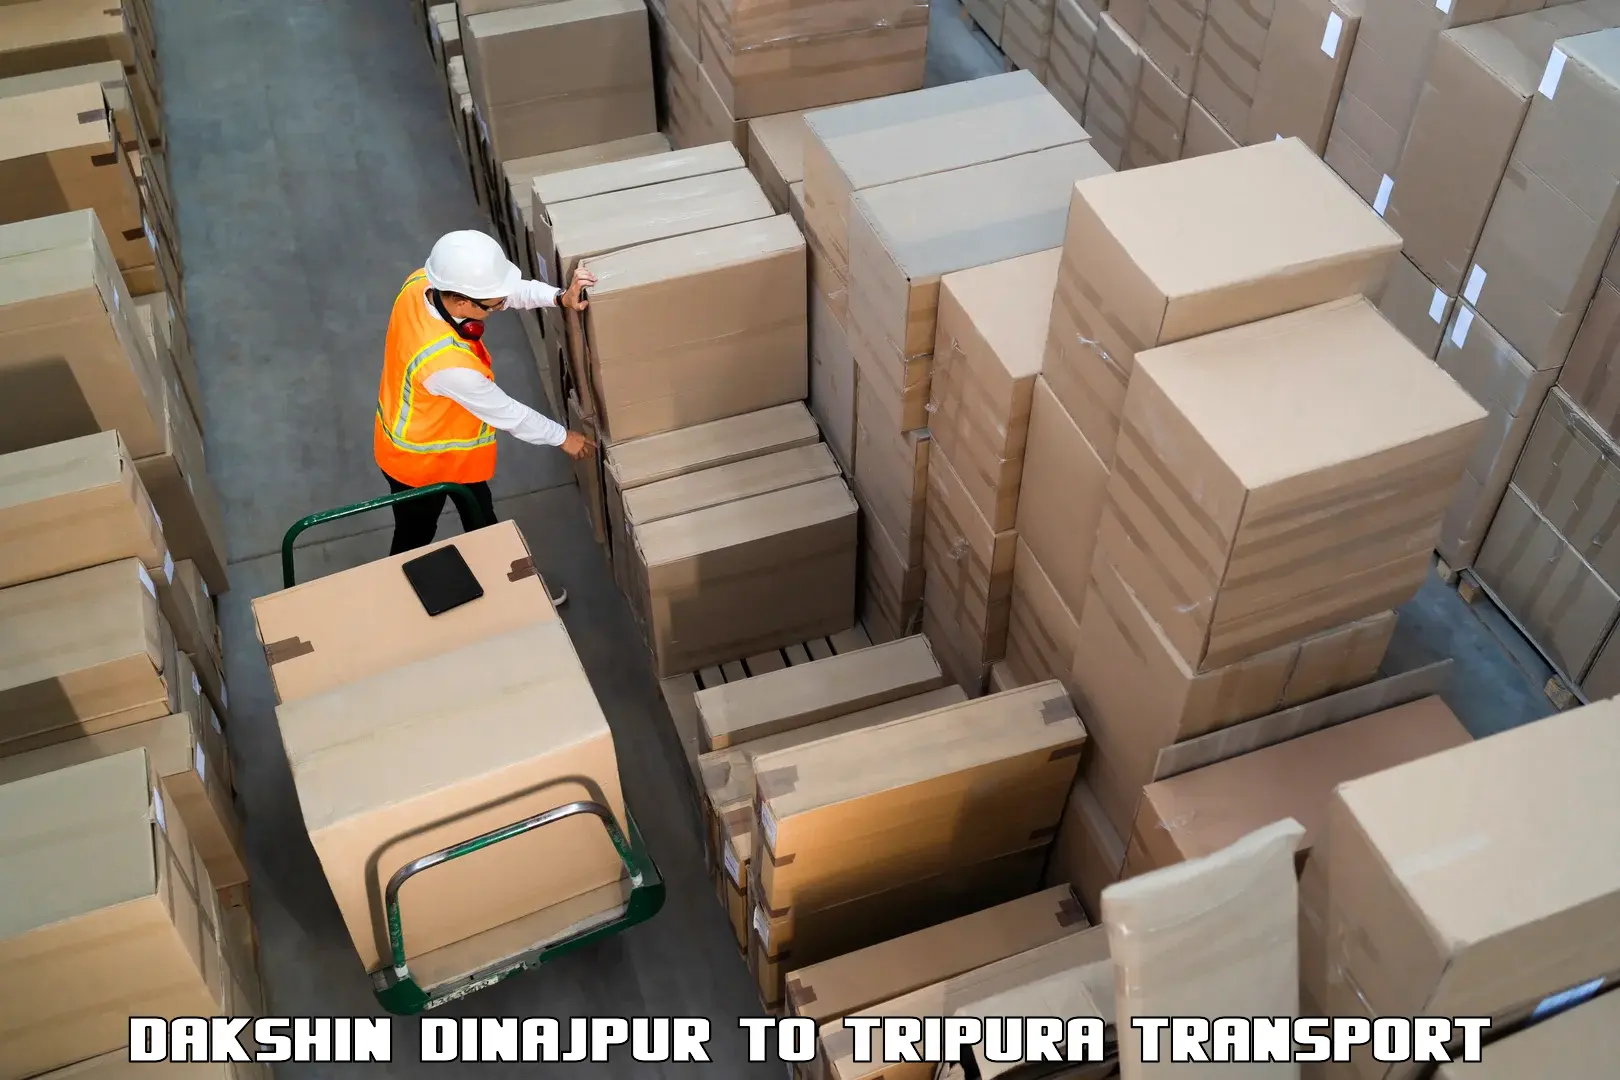 Transport in sharing Dakshin Dinajpur to Sonamura